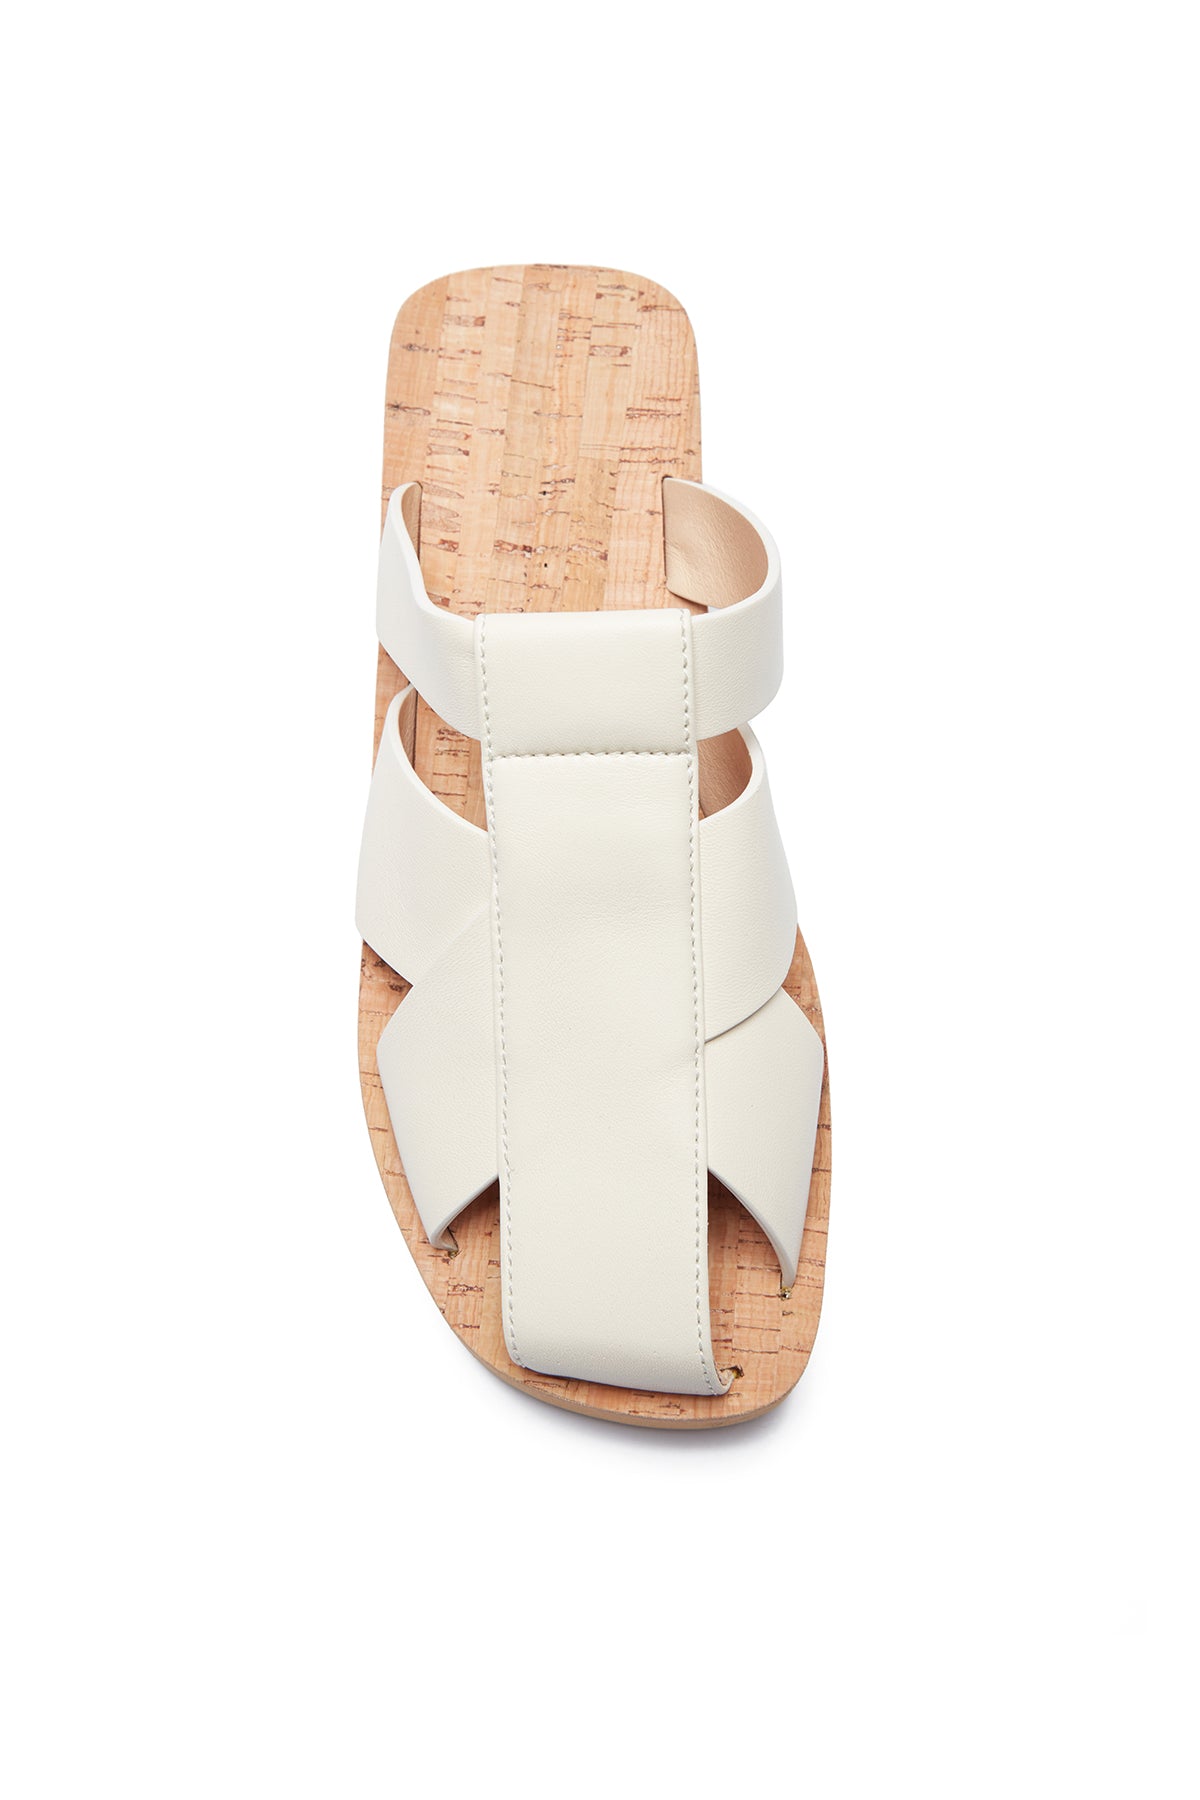 Phaon Slide Sandal in Cream Leather